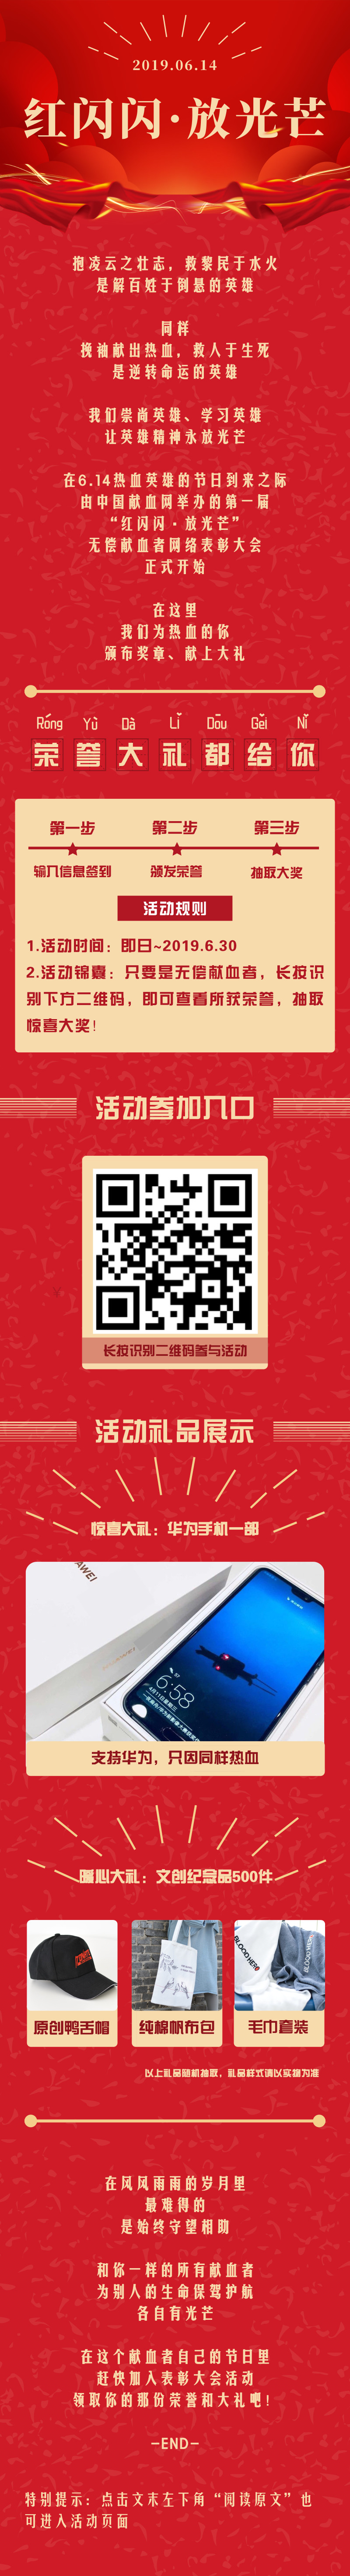 【红闪闪·放光芒】中国献血网第一届全国无偿献血者网络表彰大会开始啦